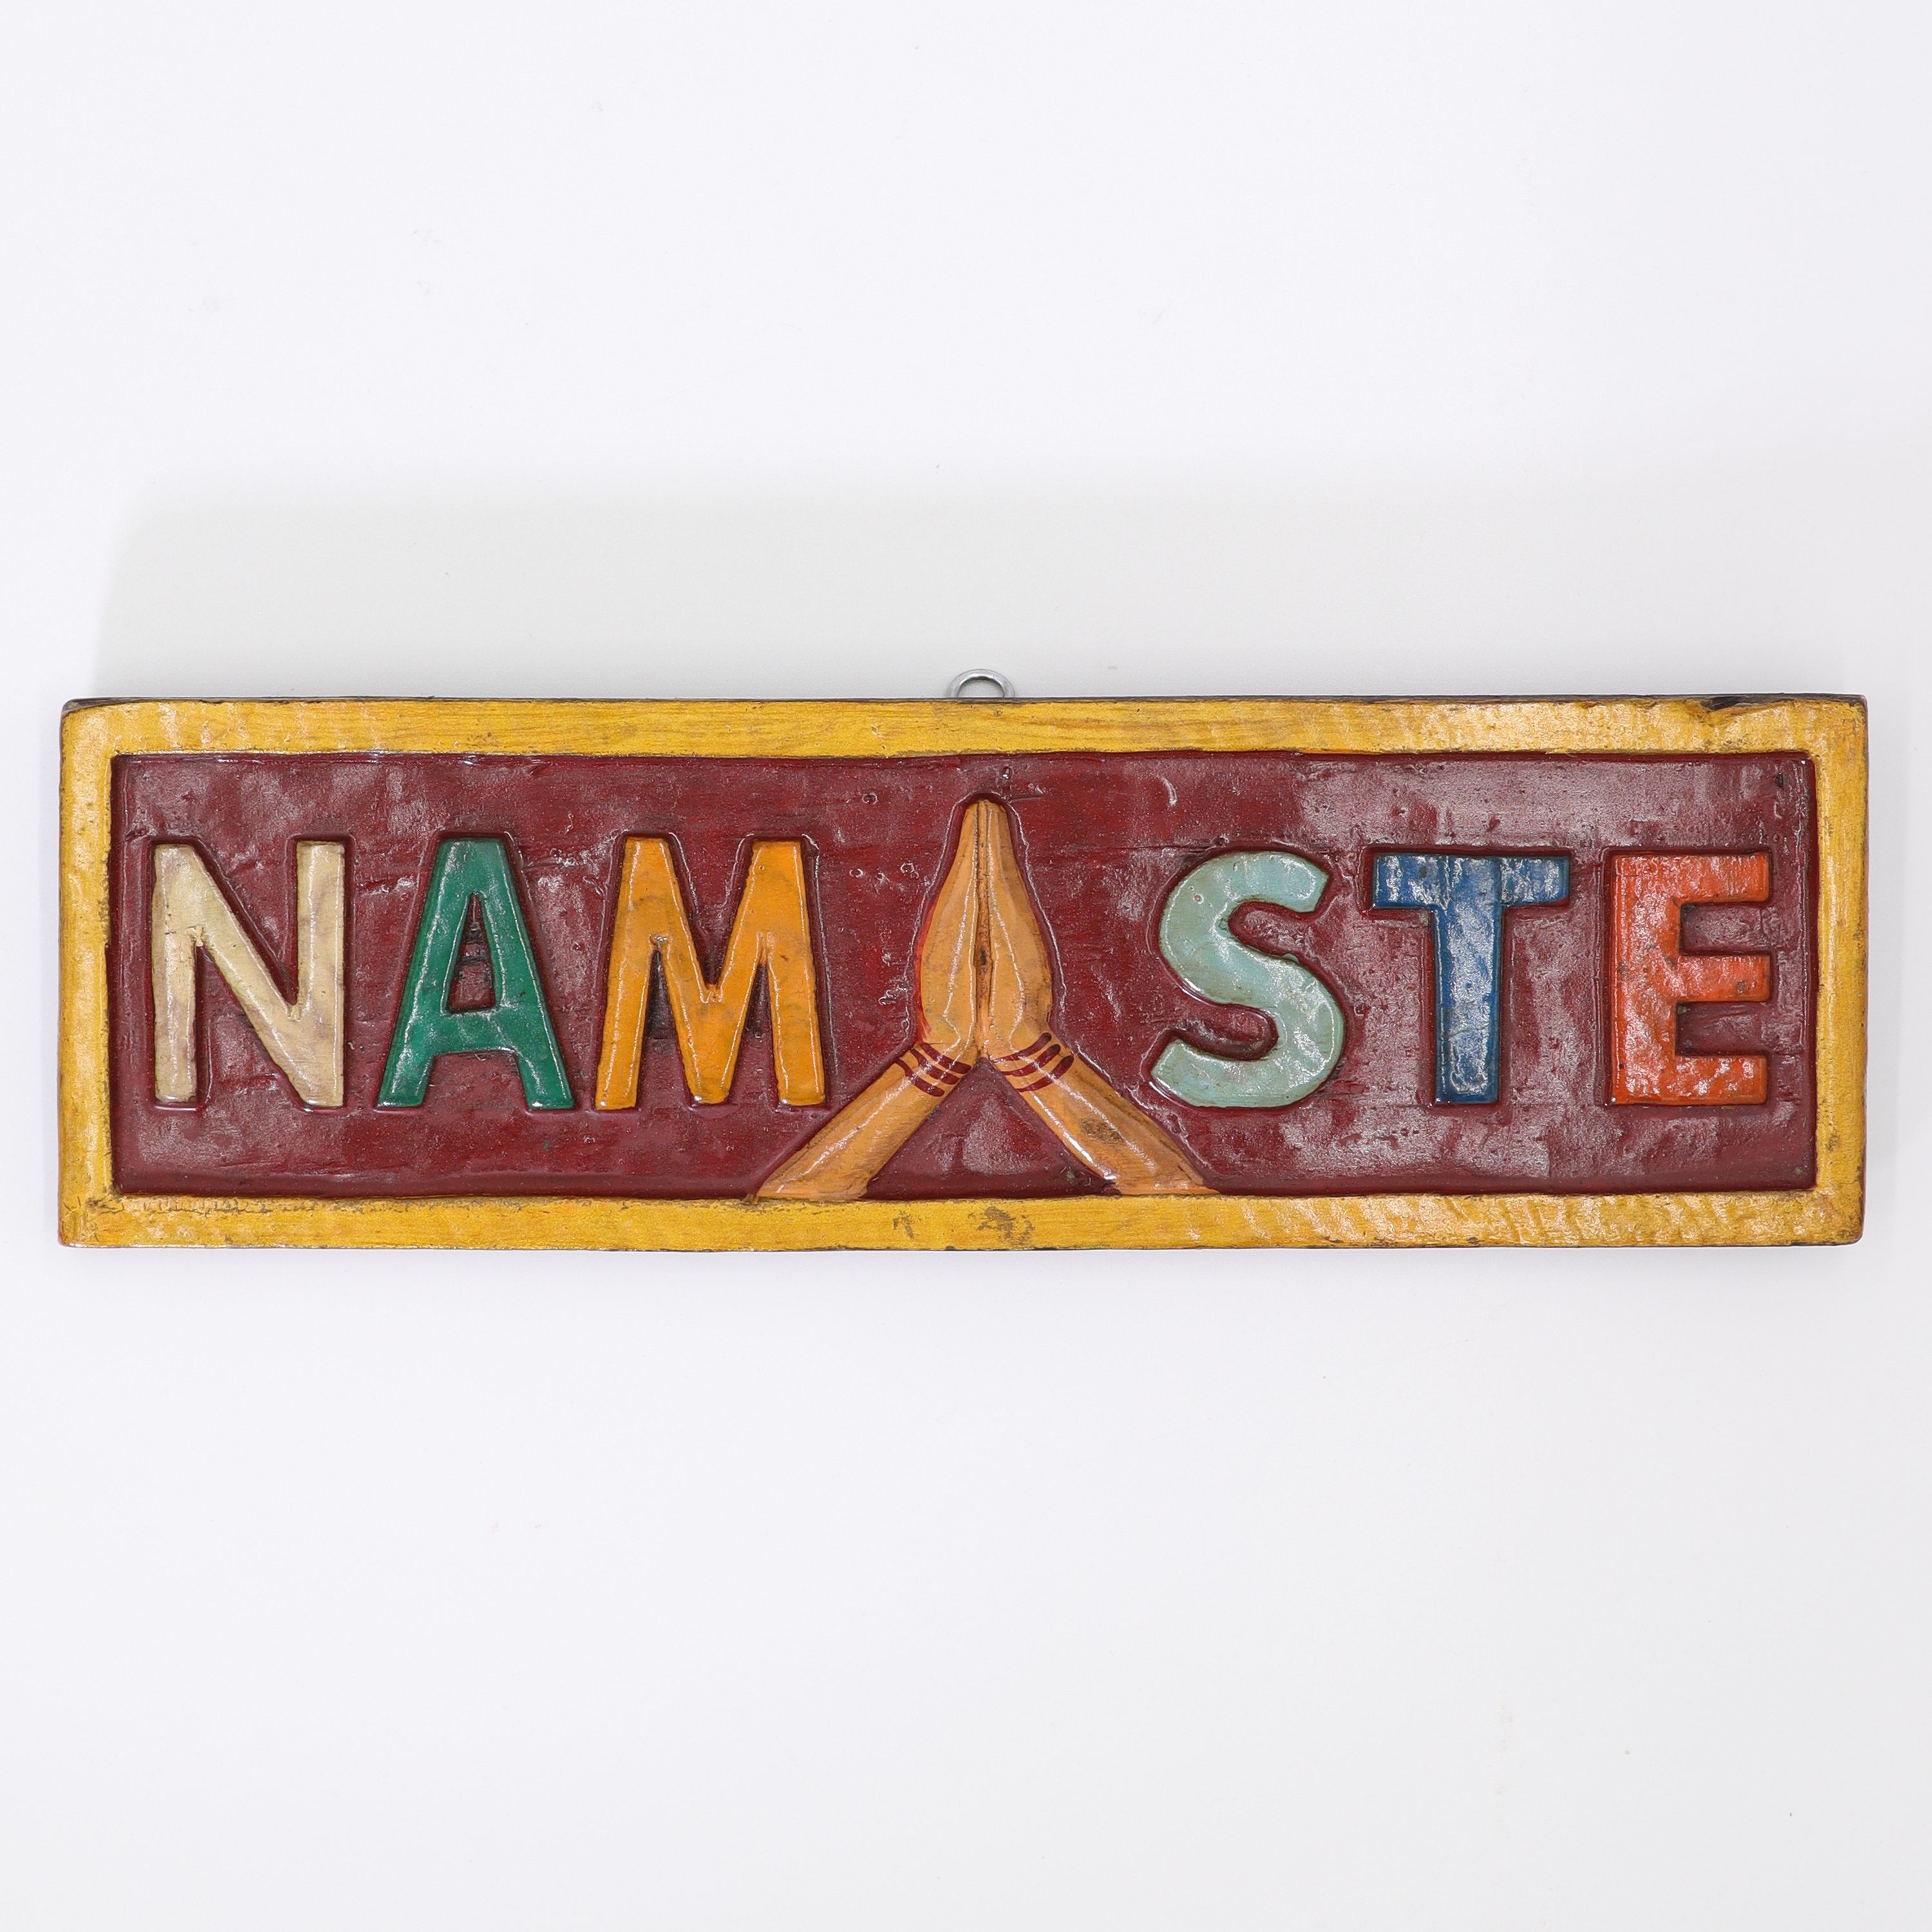 Schild aus Holz - Namaste & Hände - buntes Wandbild von Hand geschnitzt - ca. 8 x 24 cm - wundervolle Wanddekoration in traditionell nepalesischen Farben - echte Handarbeit und fair gehandelt aus Nepal